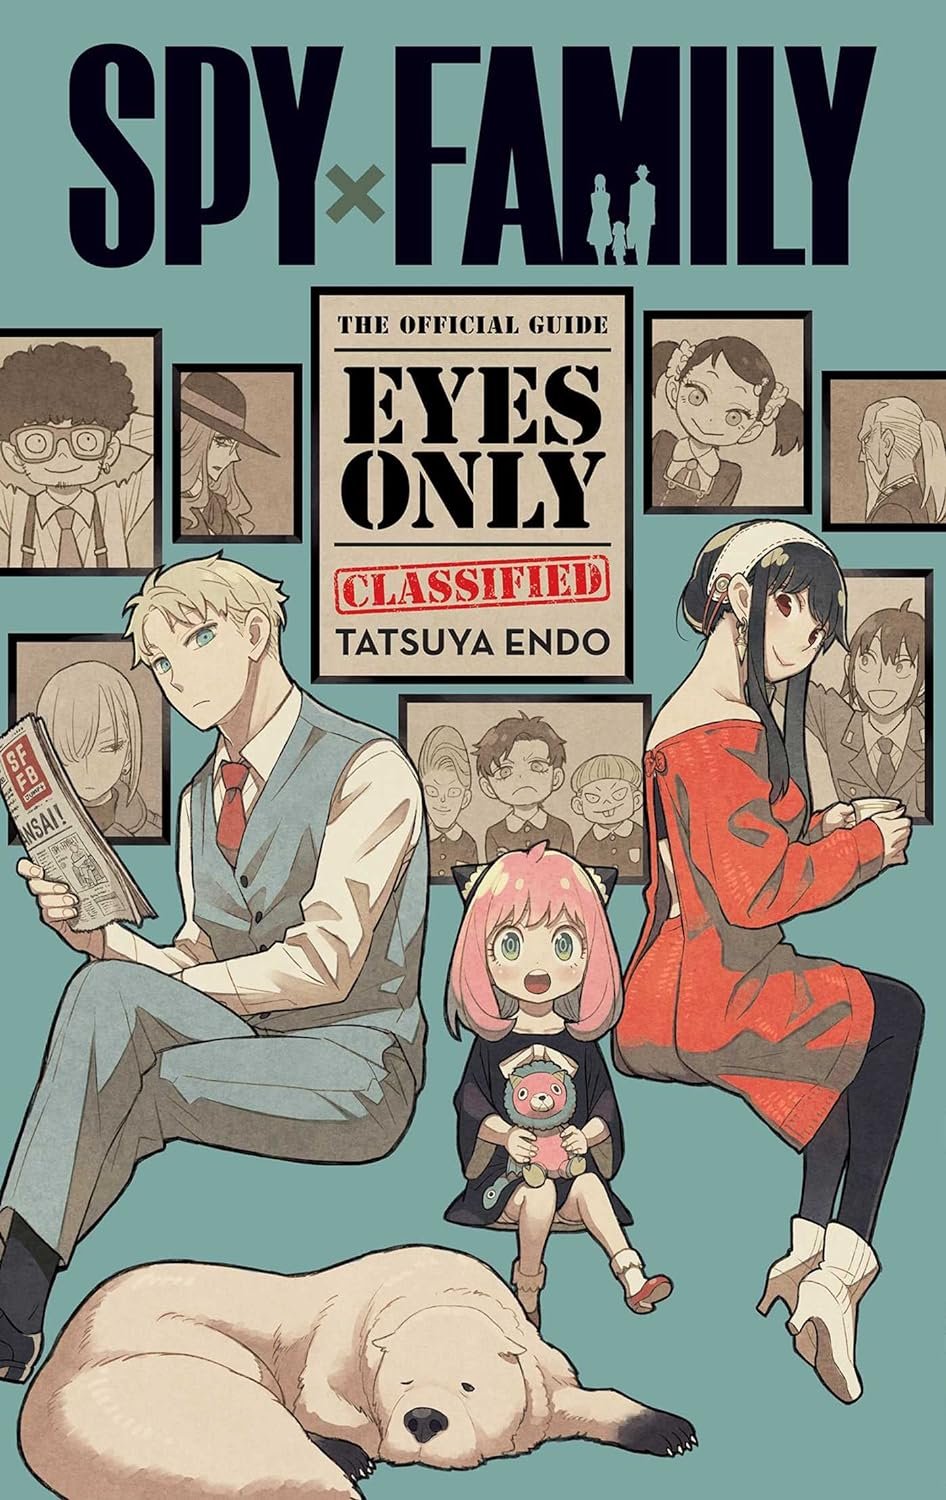 Spy x Family - SPY×FAMILY - Animes Online